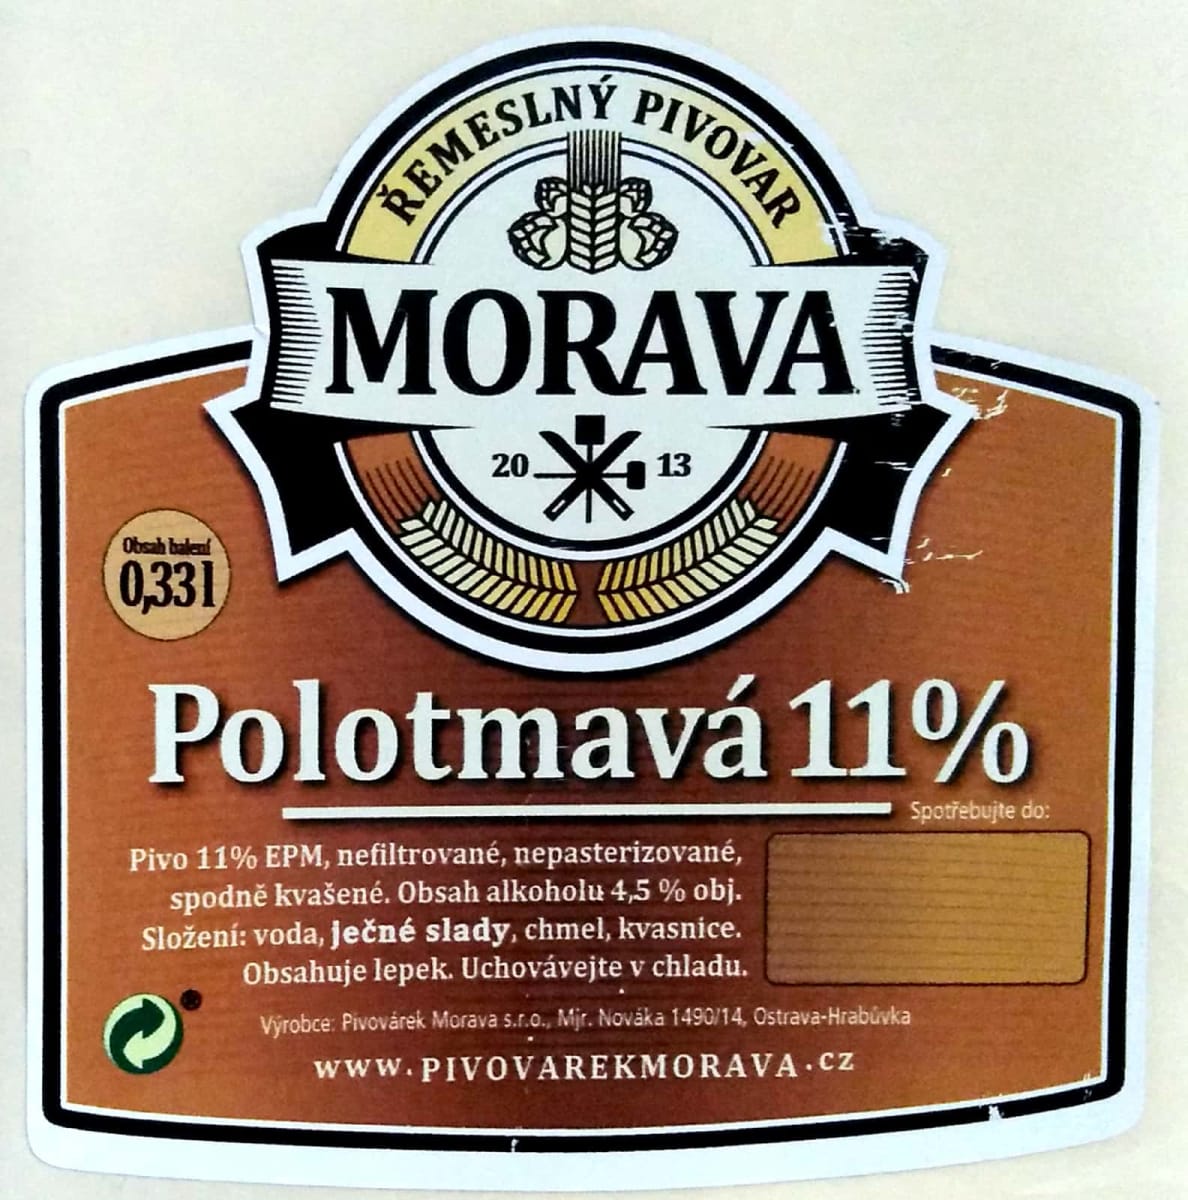 Morava Polotmavá 11